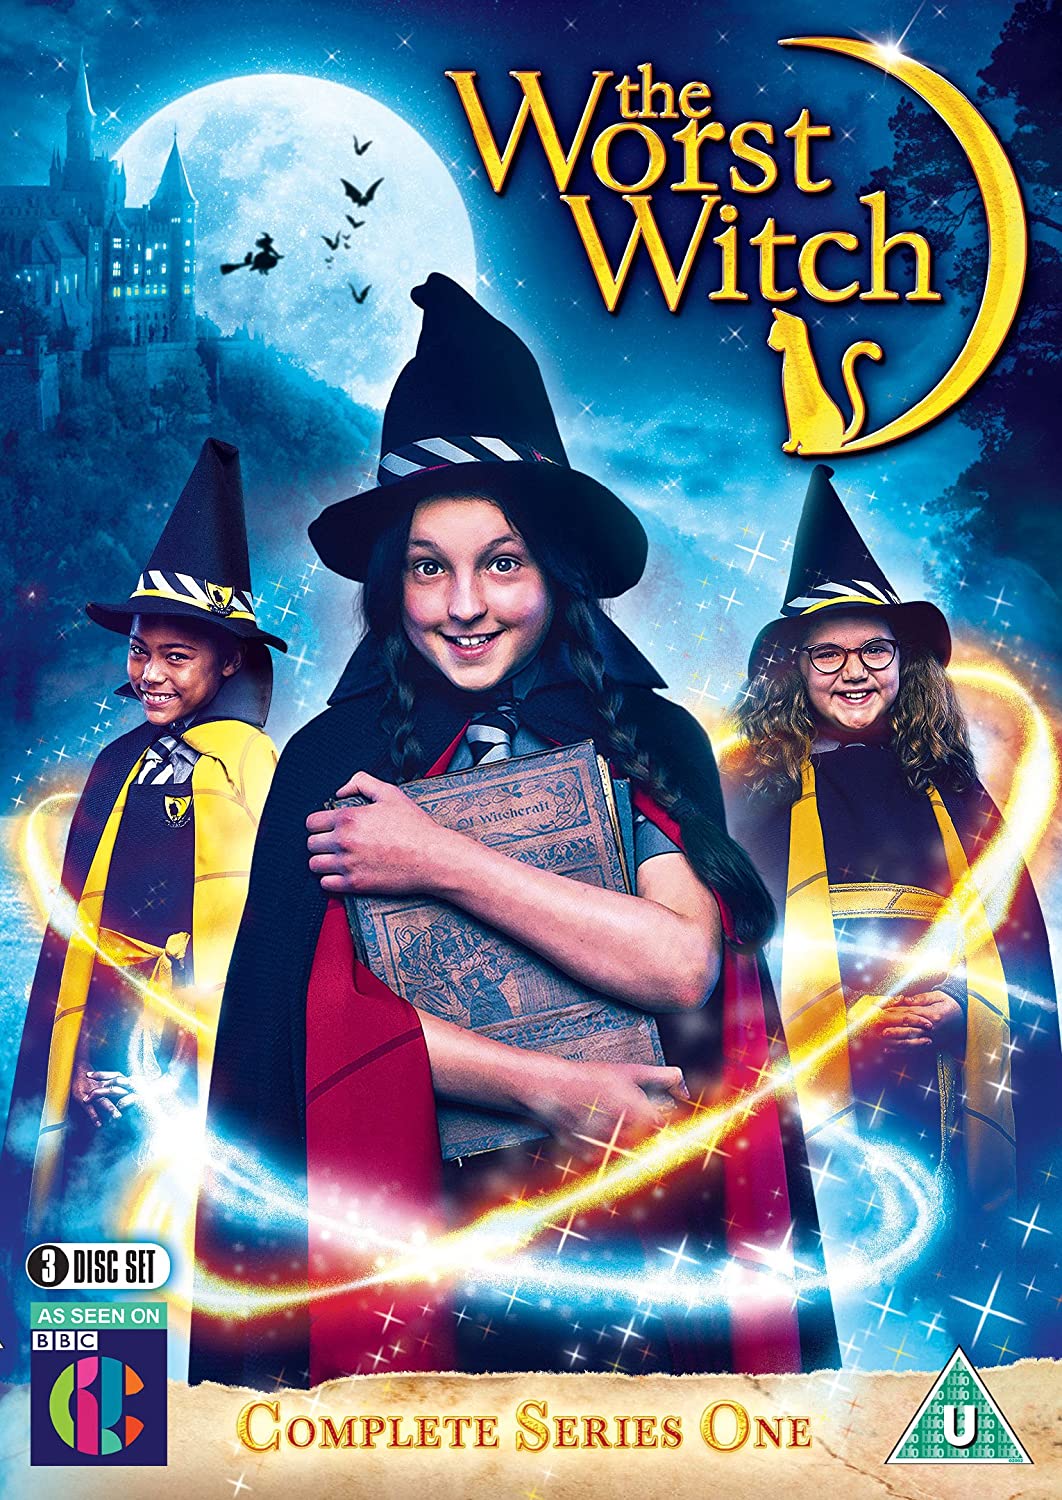 ดูหนังออนไลน์ฟรี The Worst Witch Season 3 (2019) โอมเพี้ยง! แม่มดน้อยสู้ตาย ซีซั่น 3 ตอนที่ 6